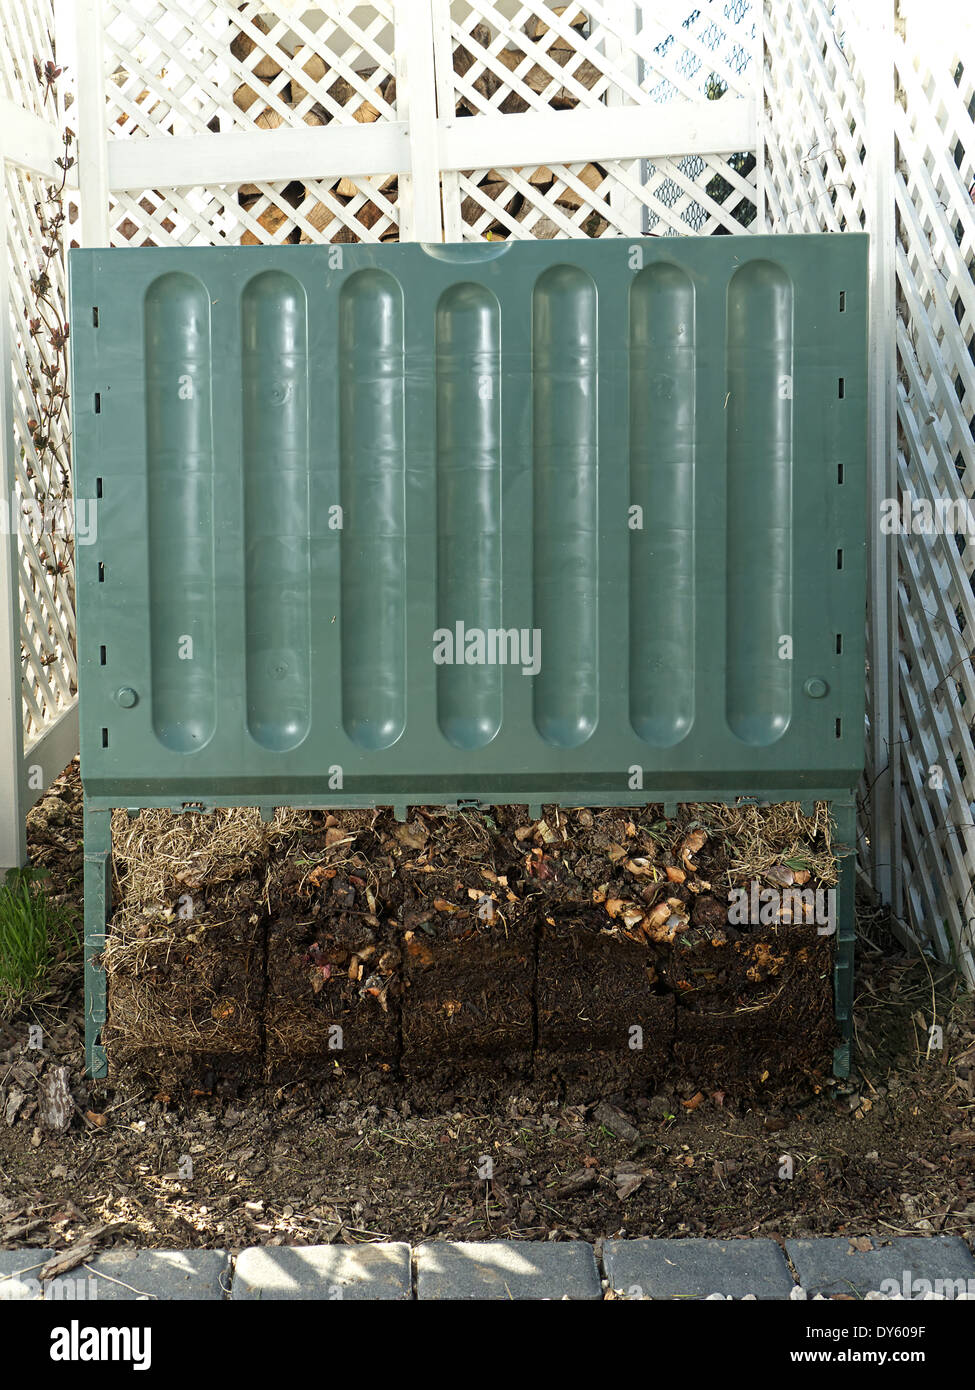 Cubo de compostaje de plástico verde con parte inferior retirado para mostrar avanzado proceso de descomposición del suelo Foto de stock